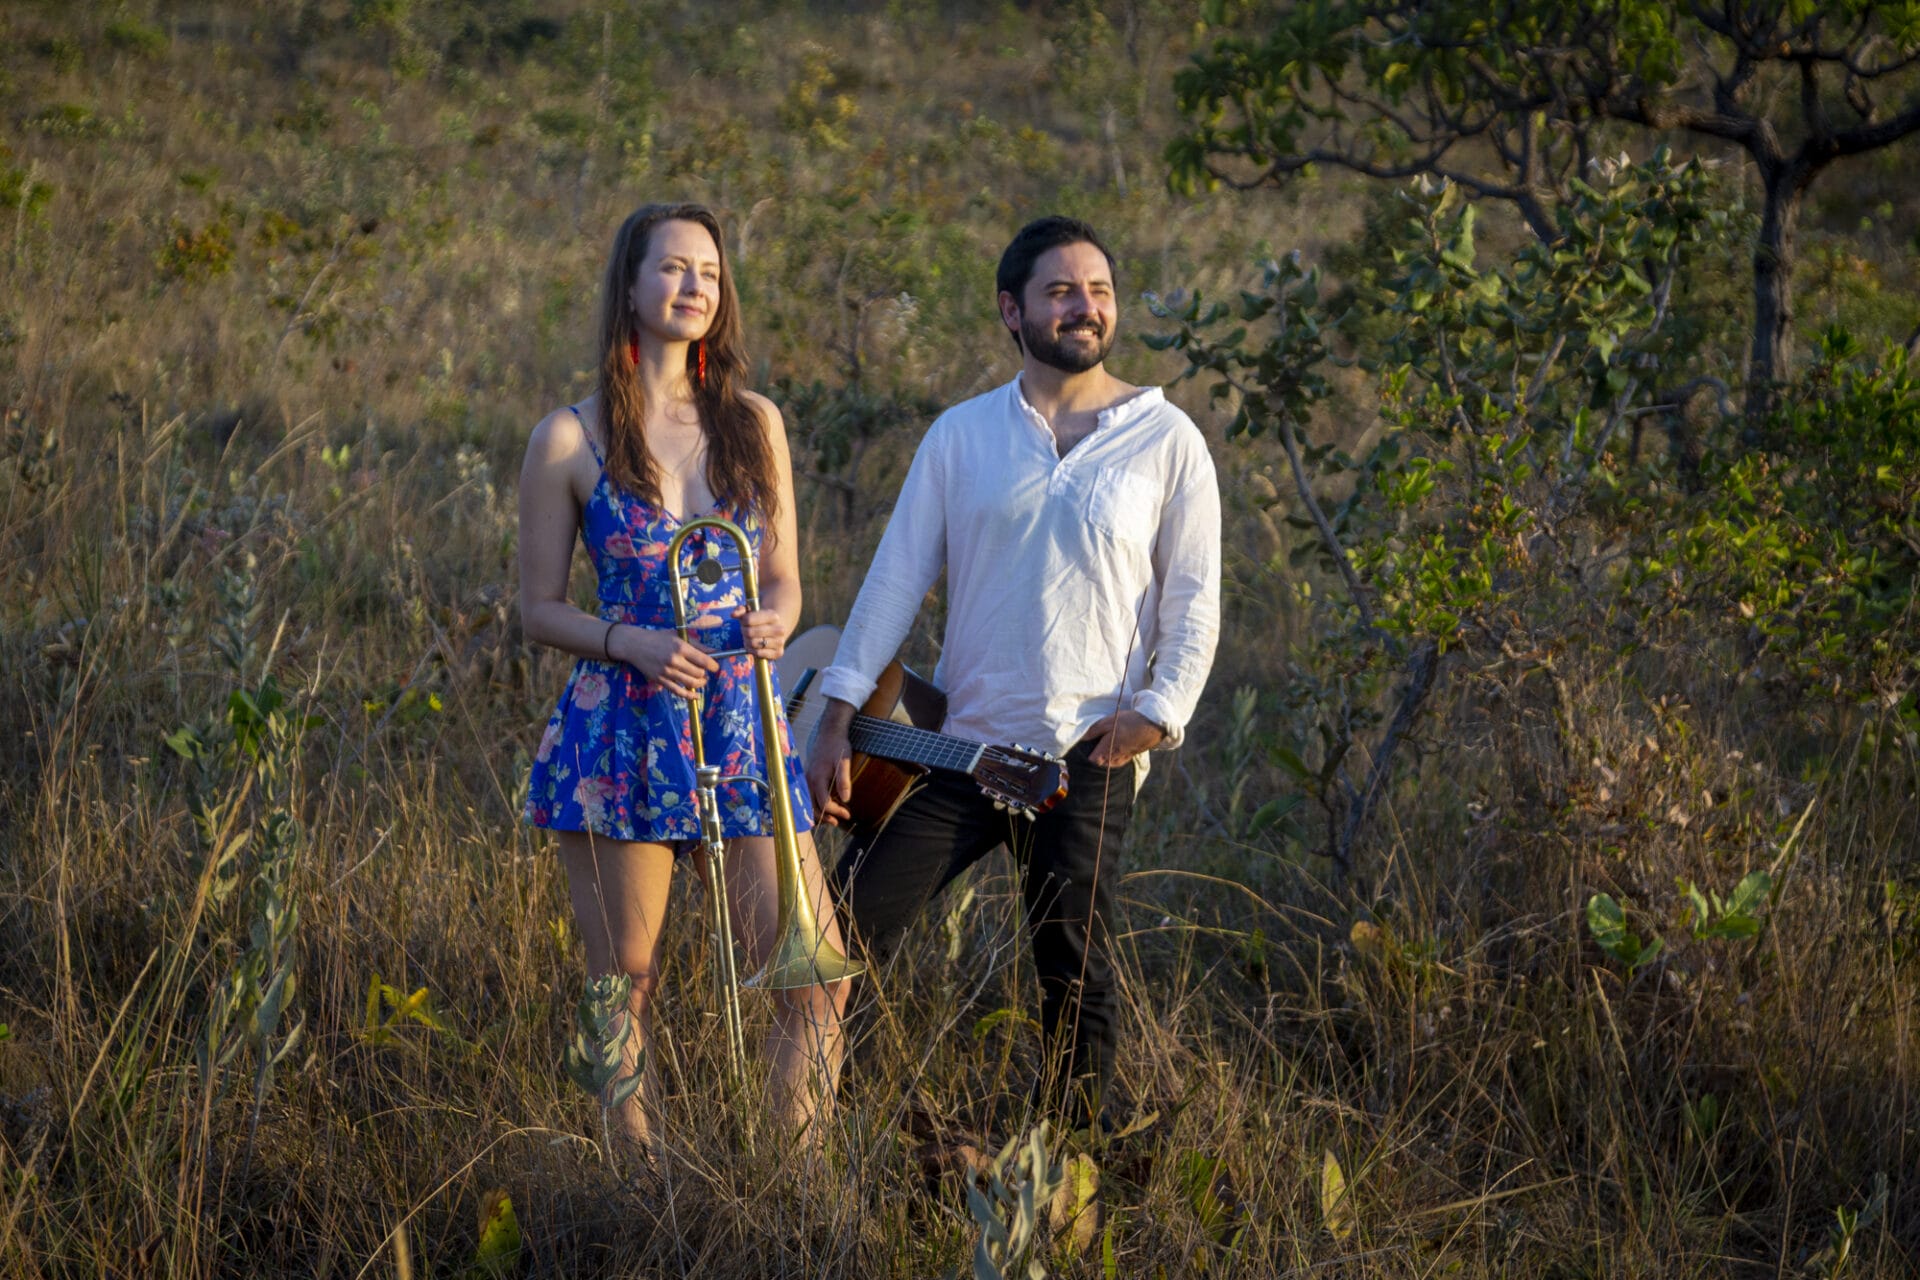 Listen: Natalie Cressman and Ian Faquini Preview ‘GUINGA’ with Lead Single “Lavagem de Conceição”